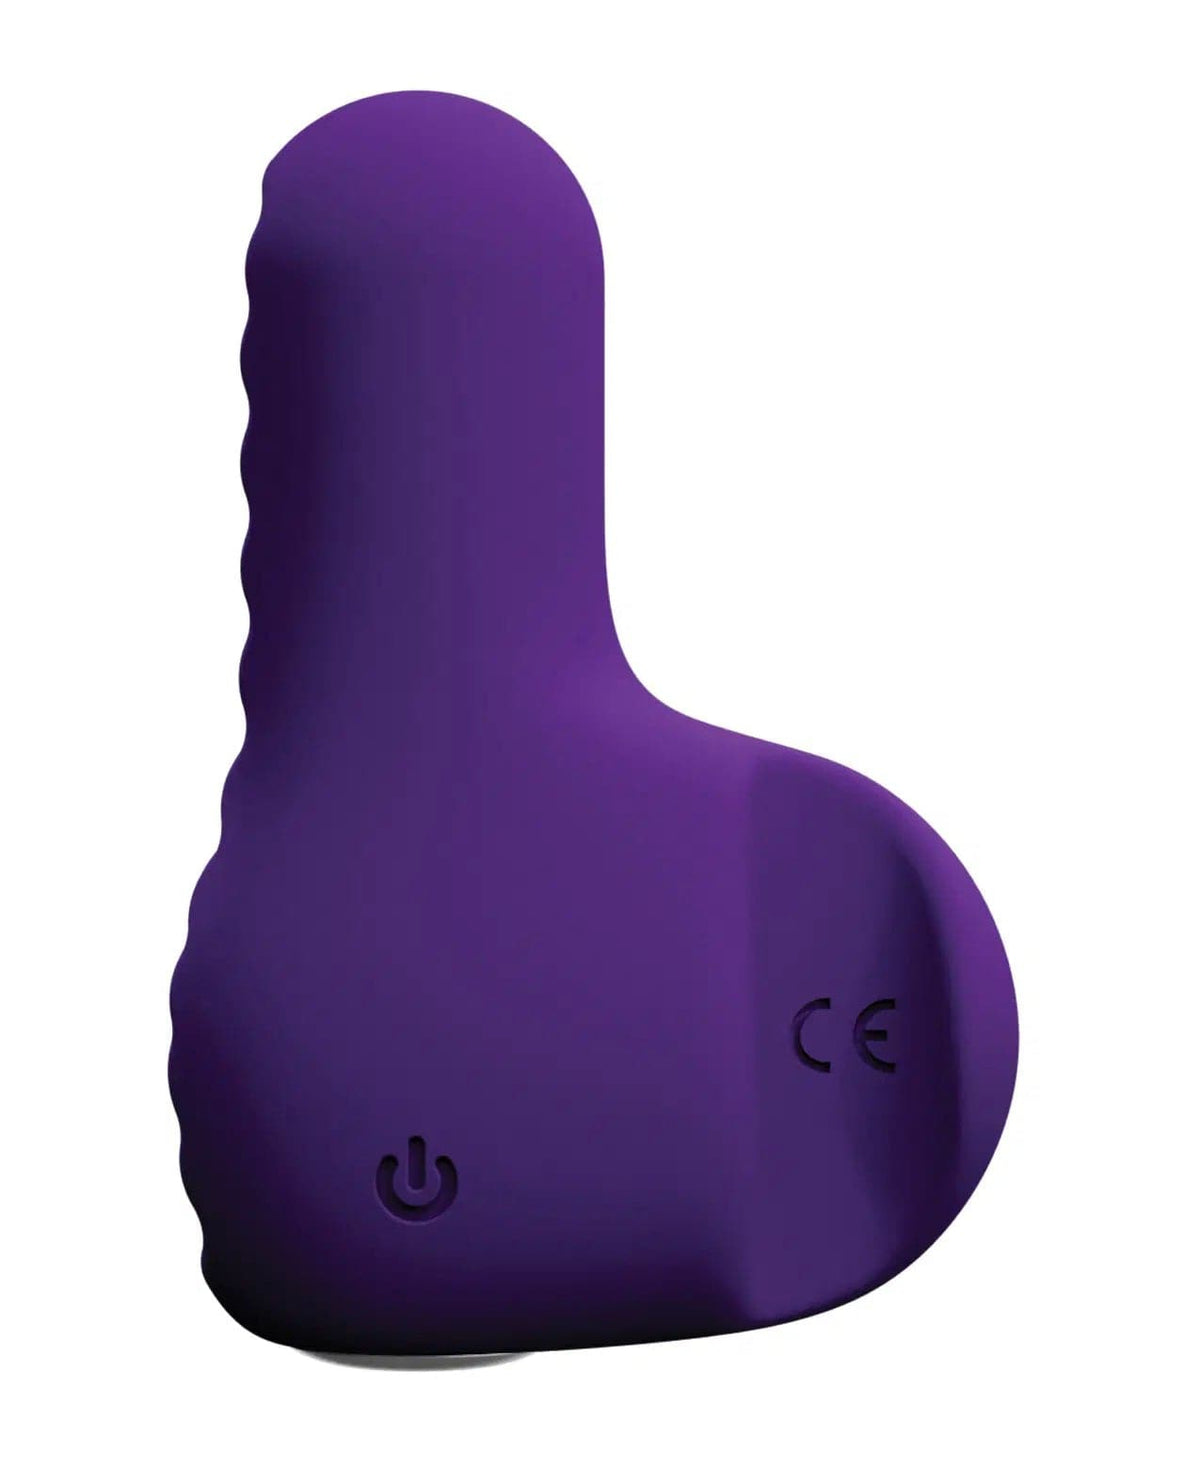 nea rechargeable finger vibe deep purple